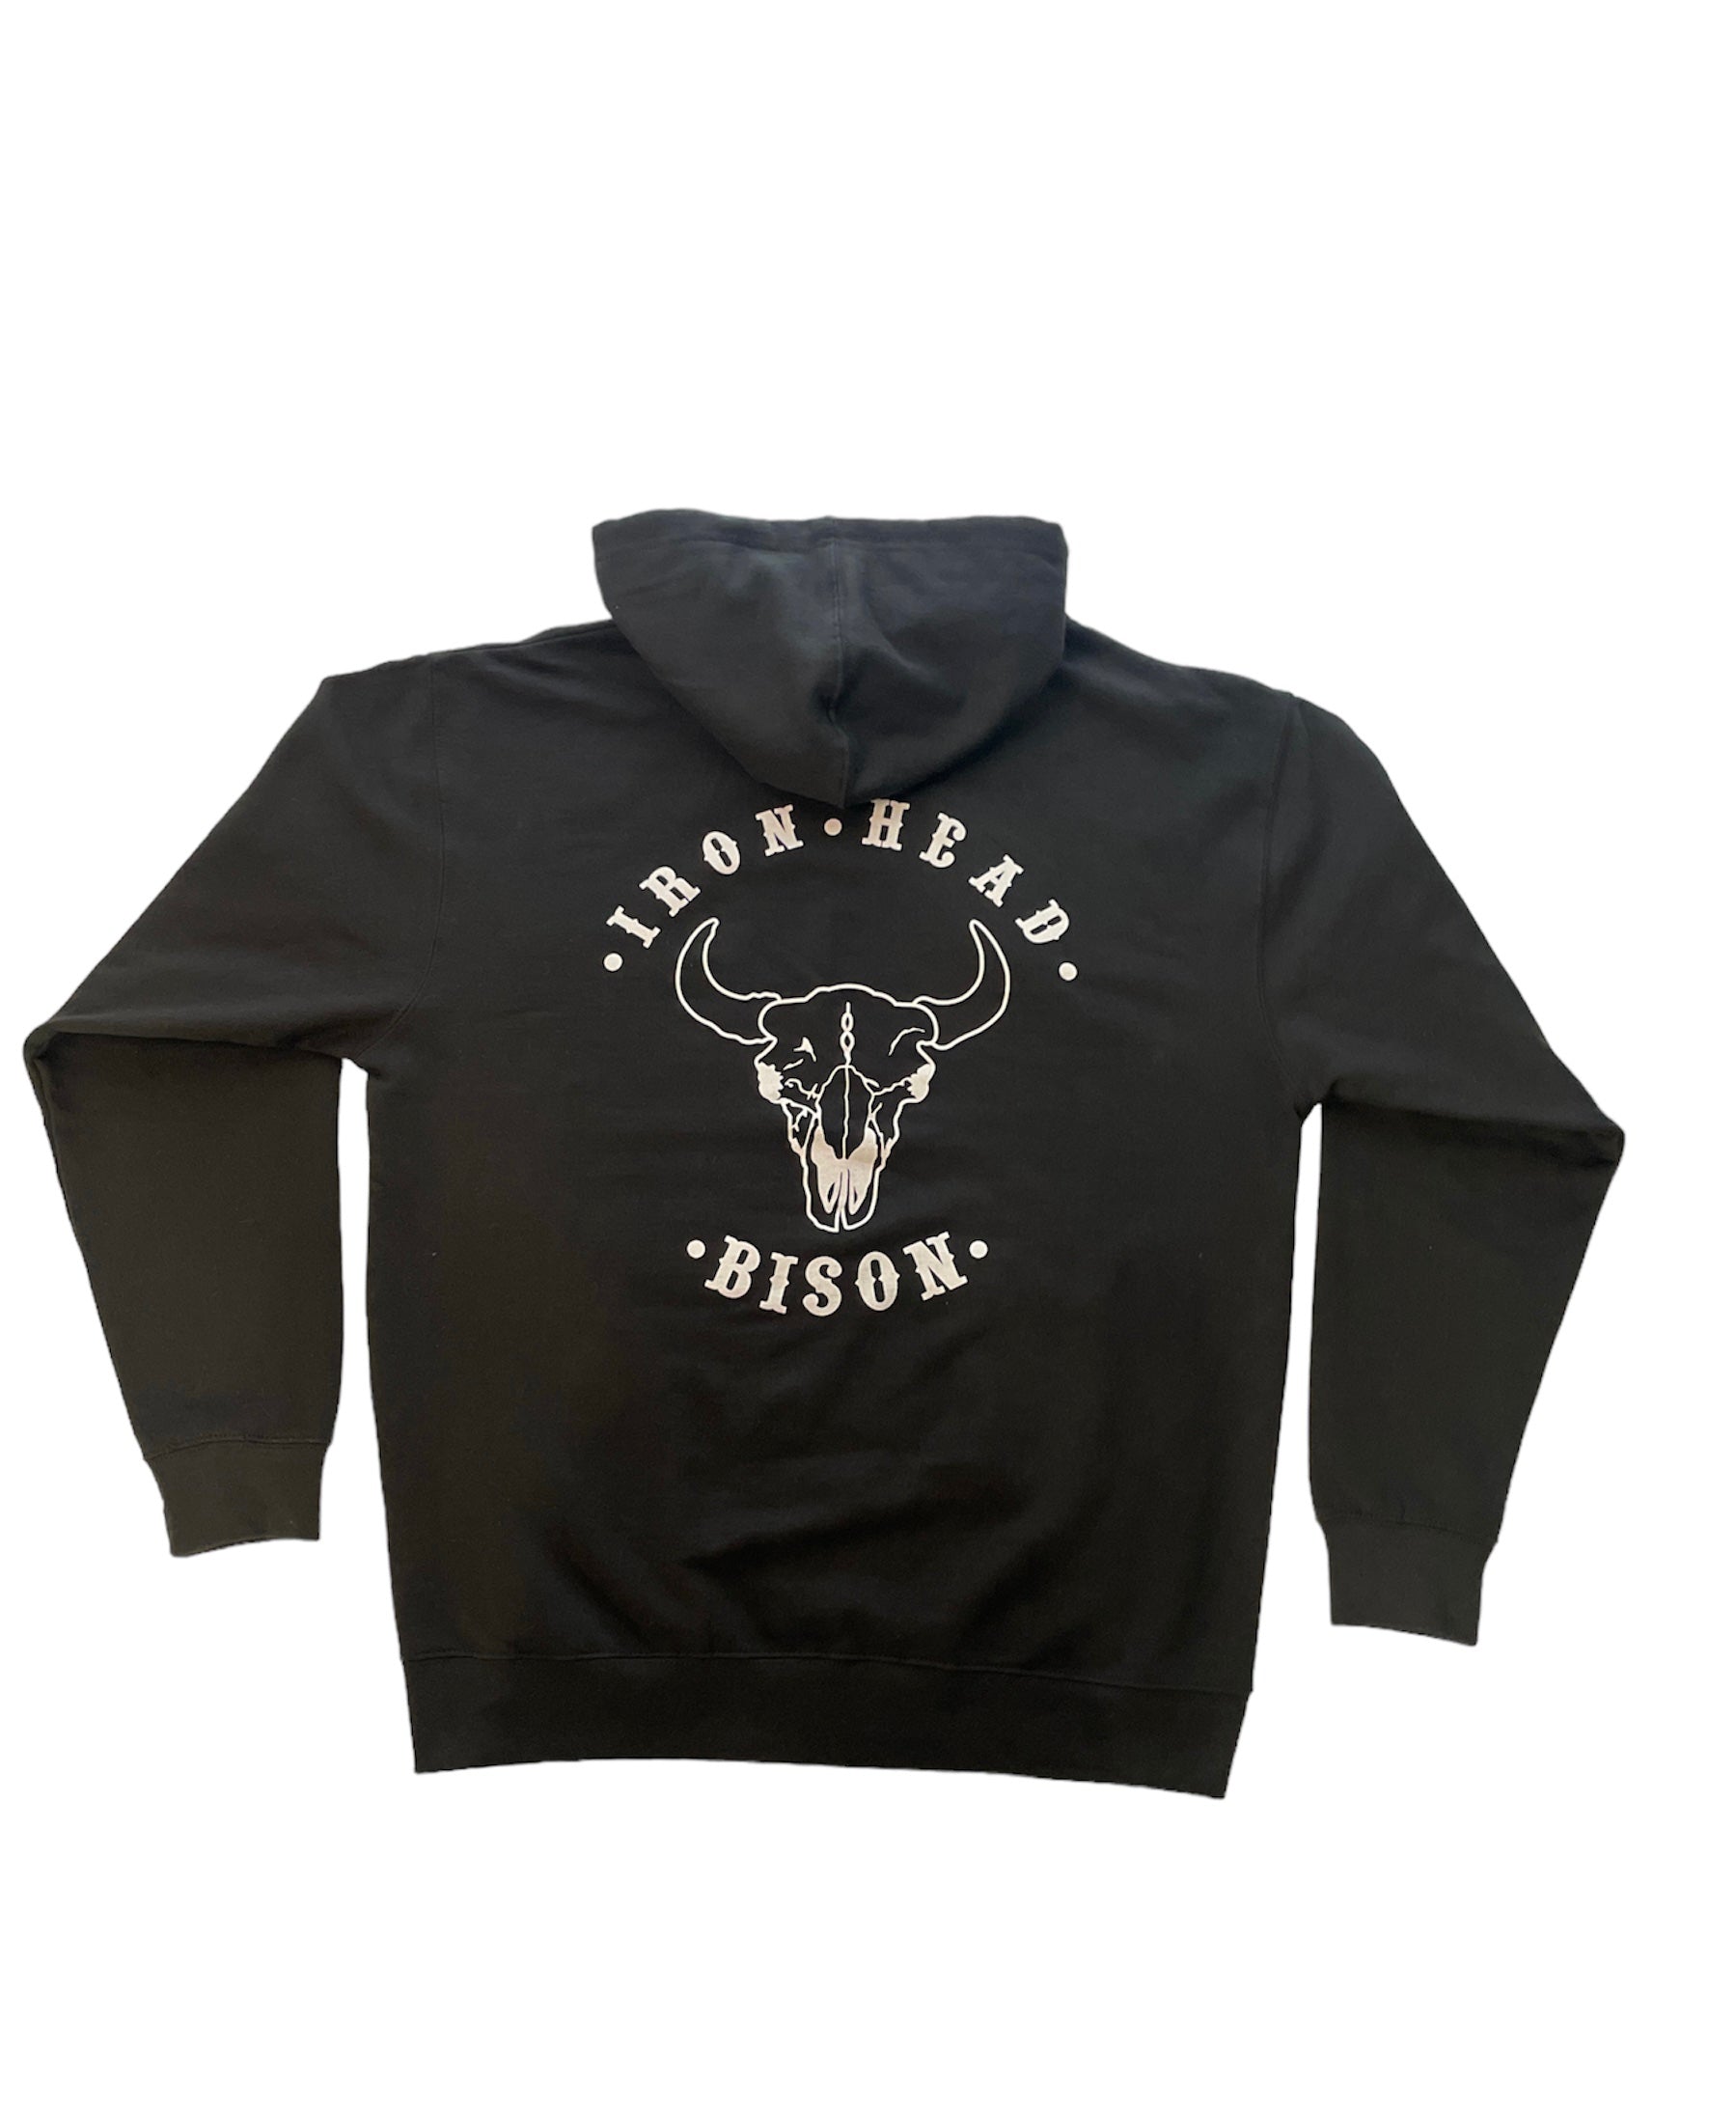 Iron Head Bison Merchandise